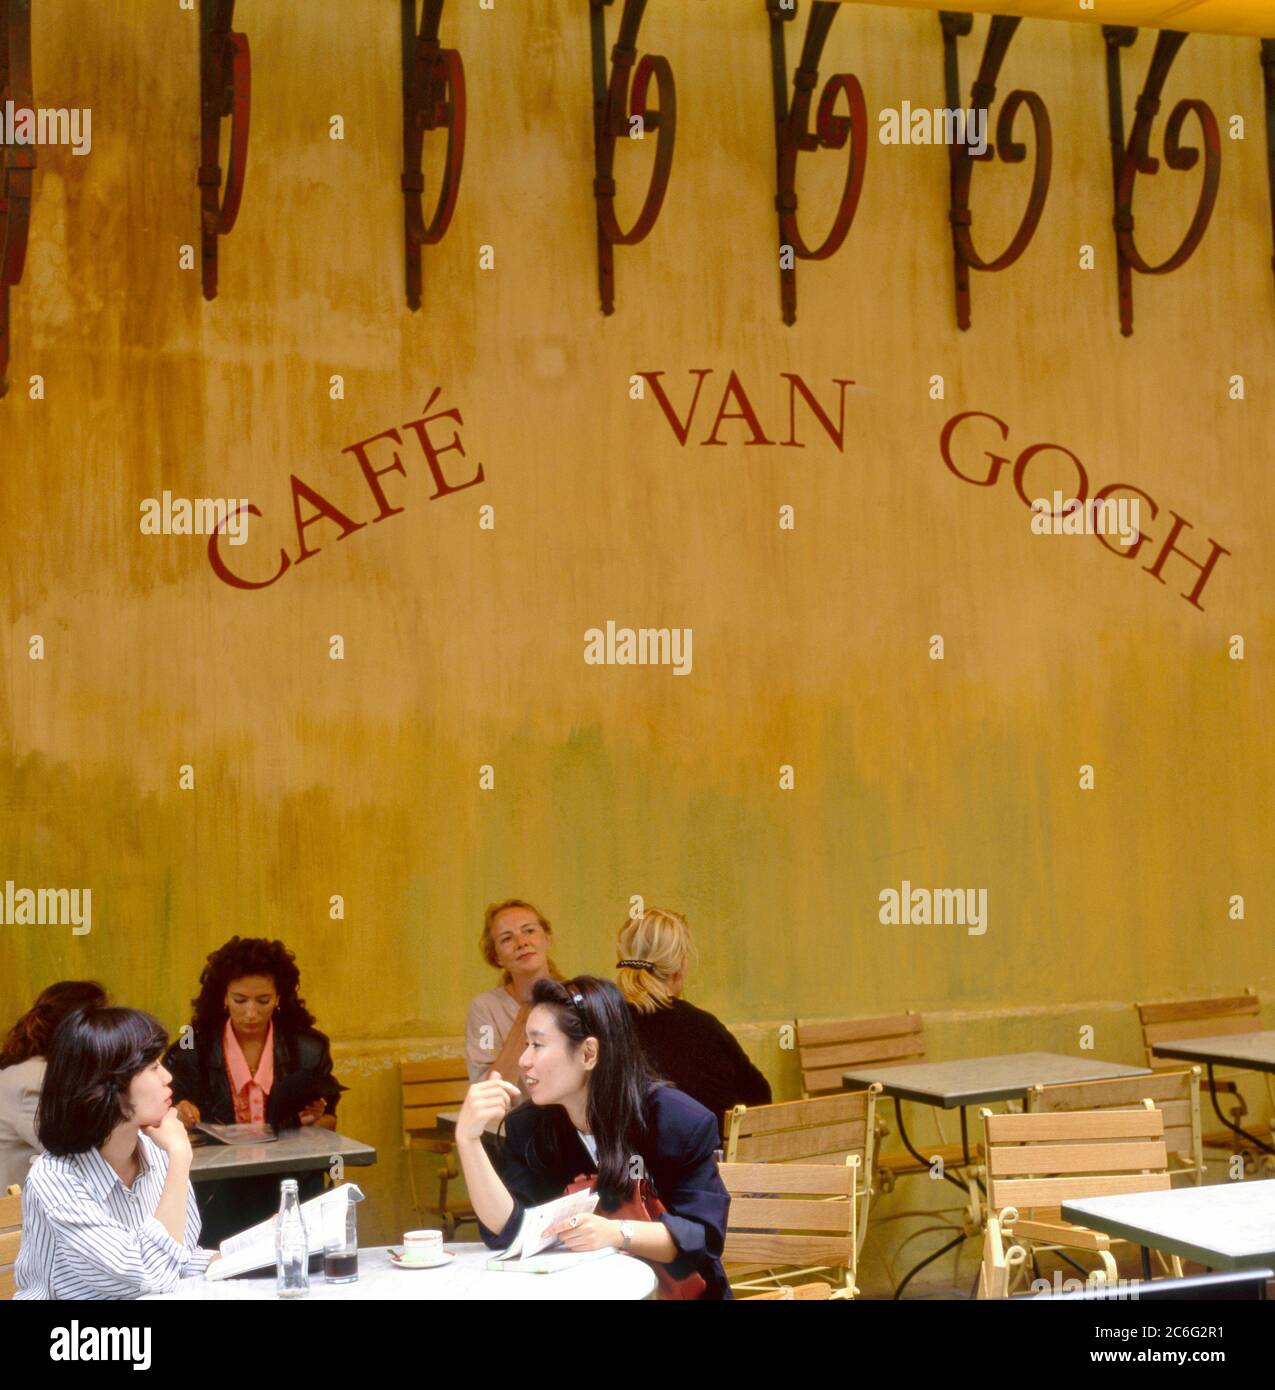 Arles, France - 24 juillet 2017 : café Van Gogh à la place du Forum à Arles. Provence, France. C'est la même terrasse de café que Vincent van Gogh a peinte Banque D'Images